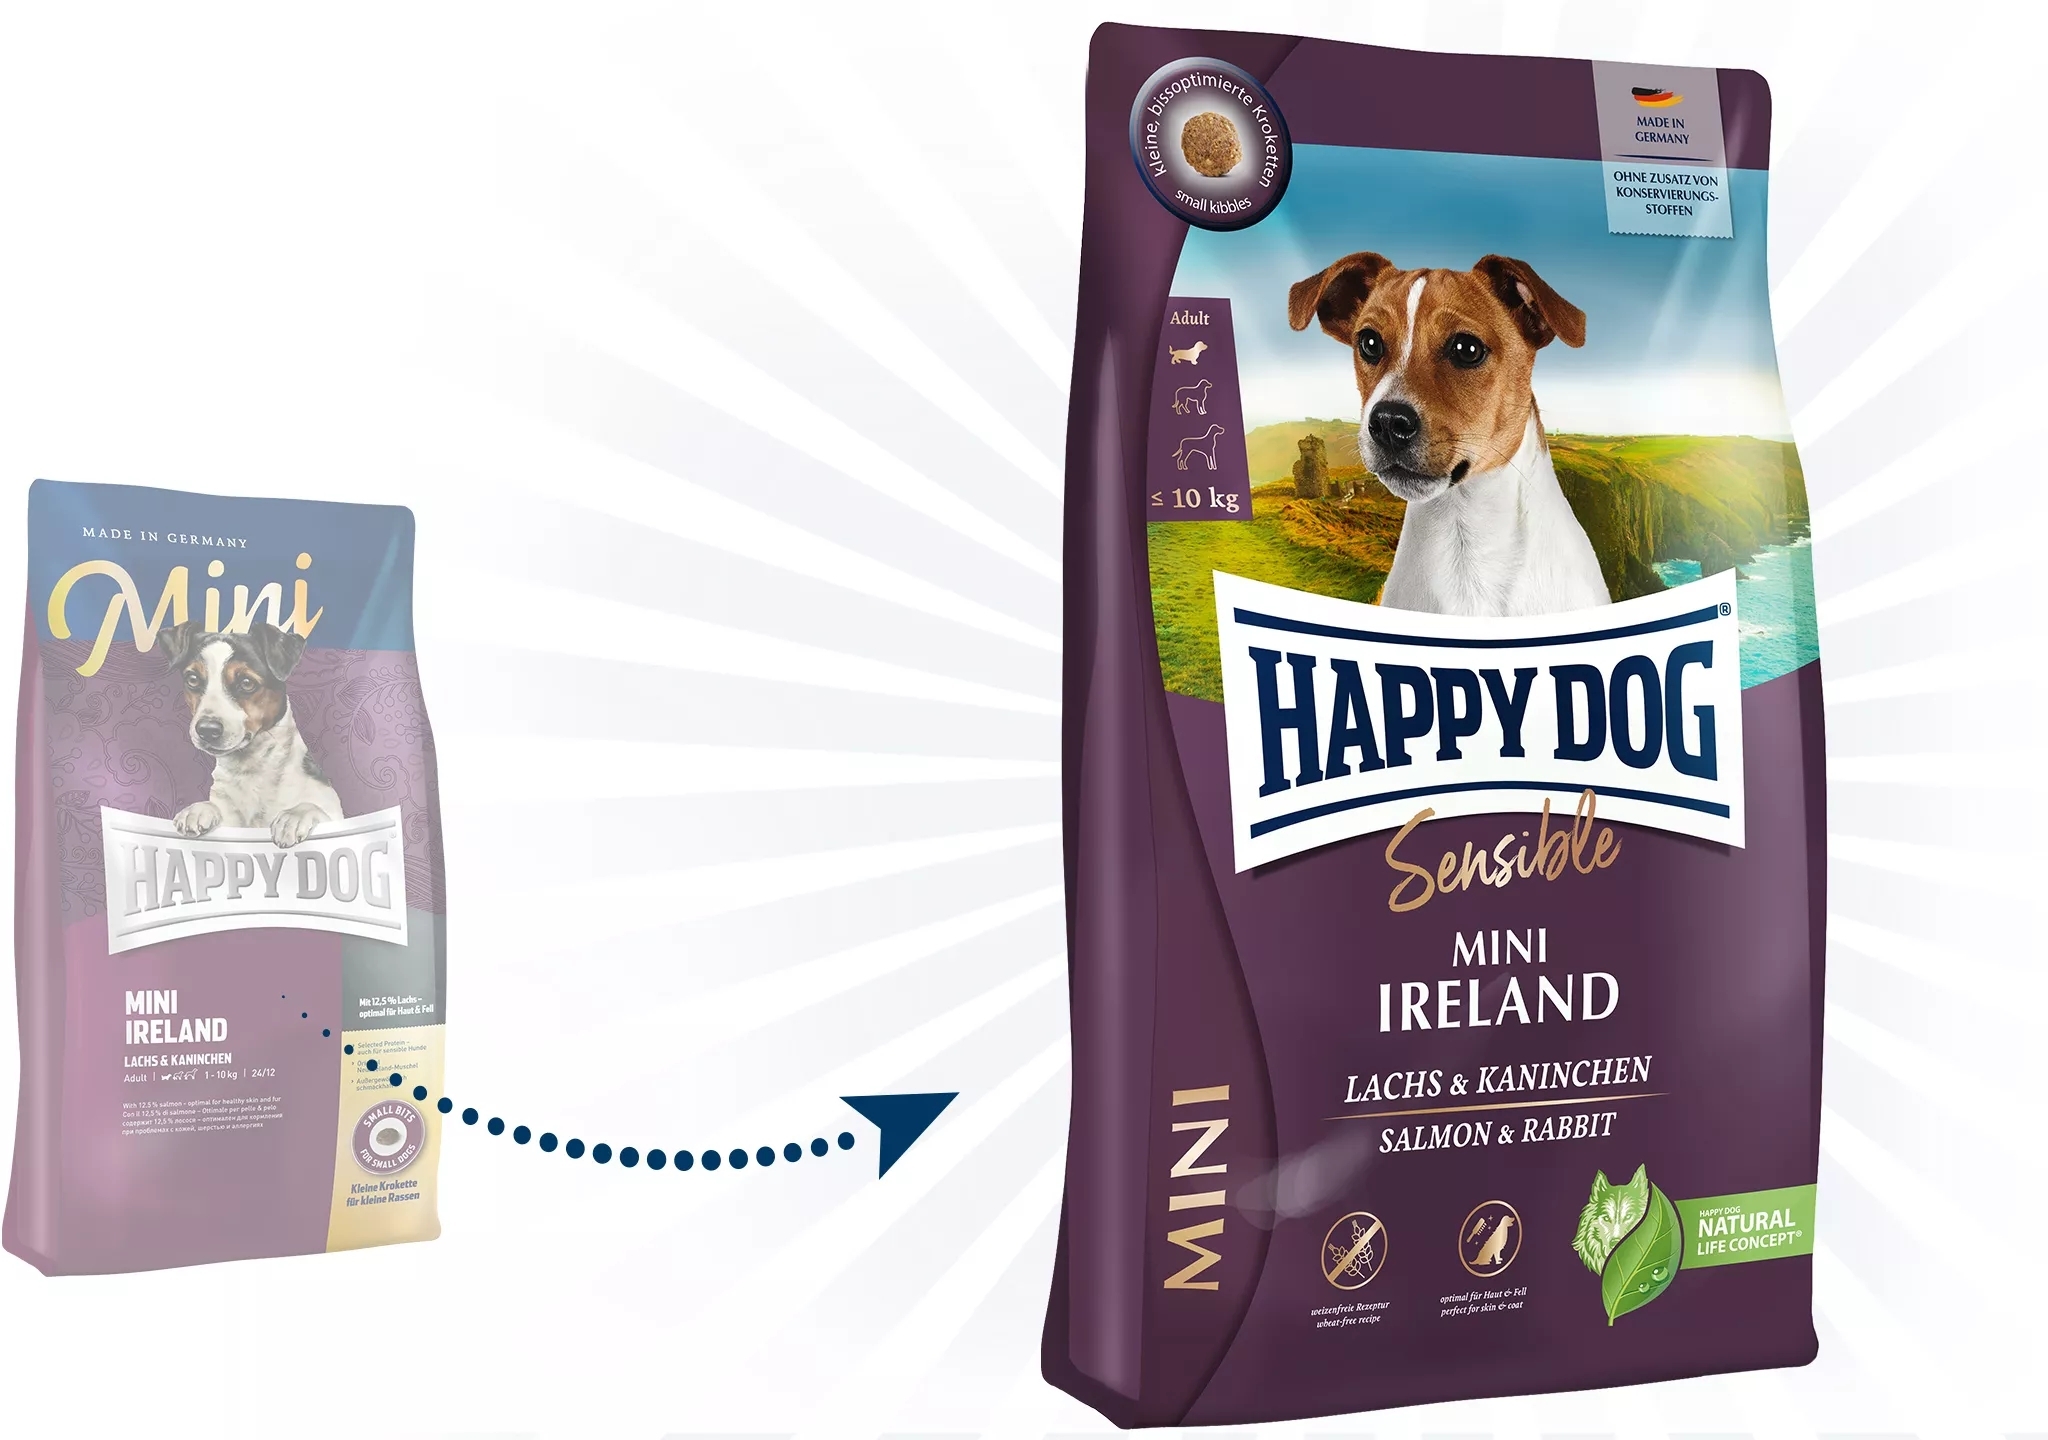 Happy Dog Sensible Mini Irland - zoom